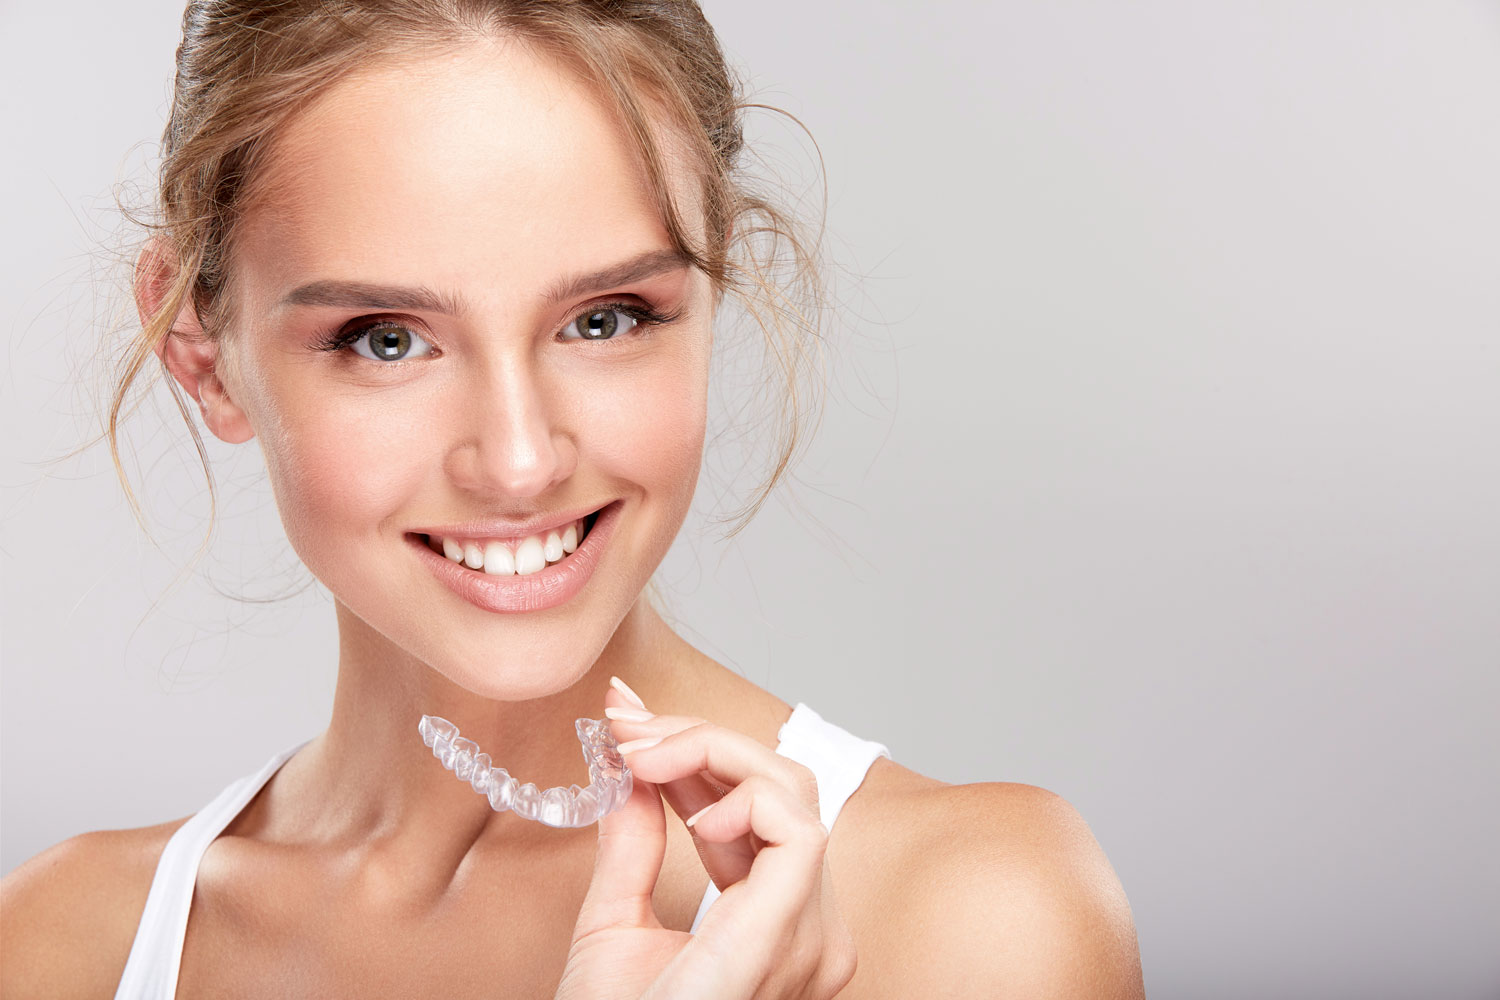 Ortodoncia invisible para conseguir una sonrisa perfecta - Dental Roca